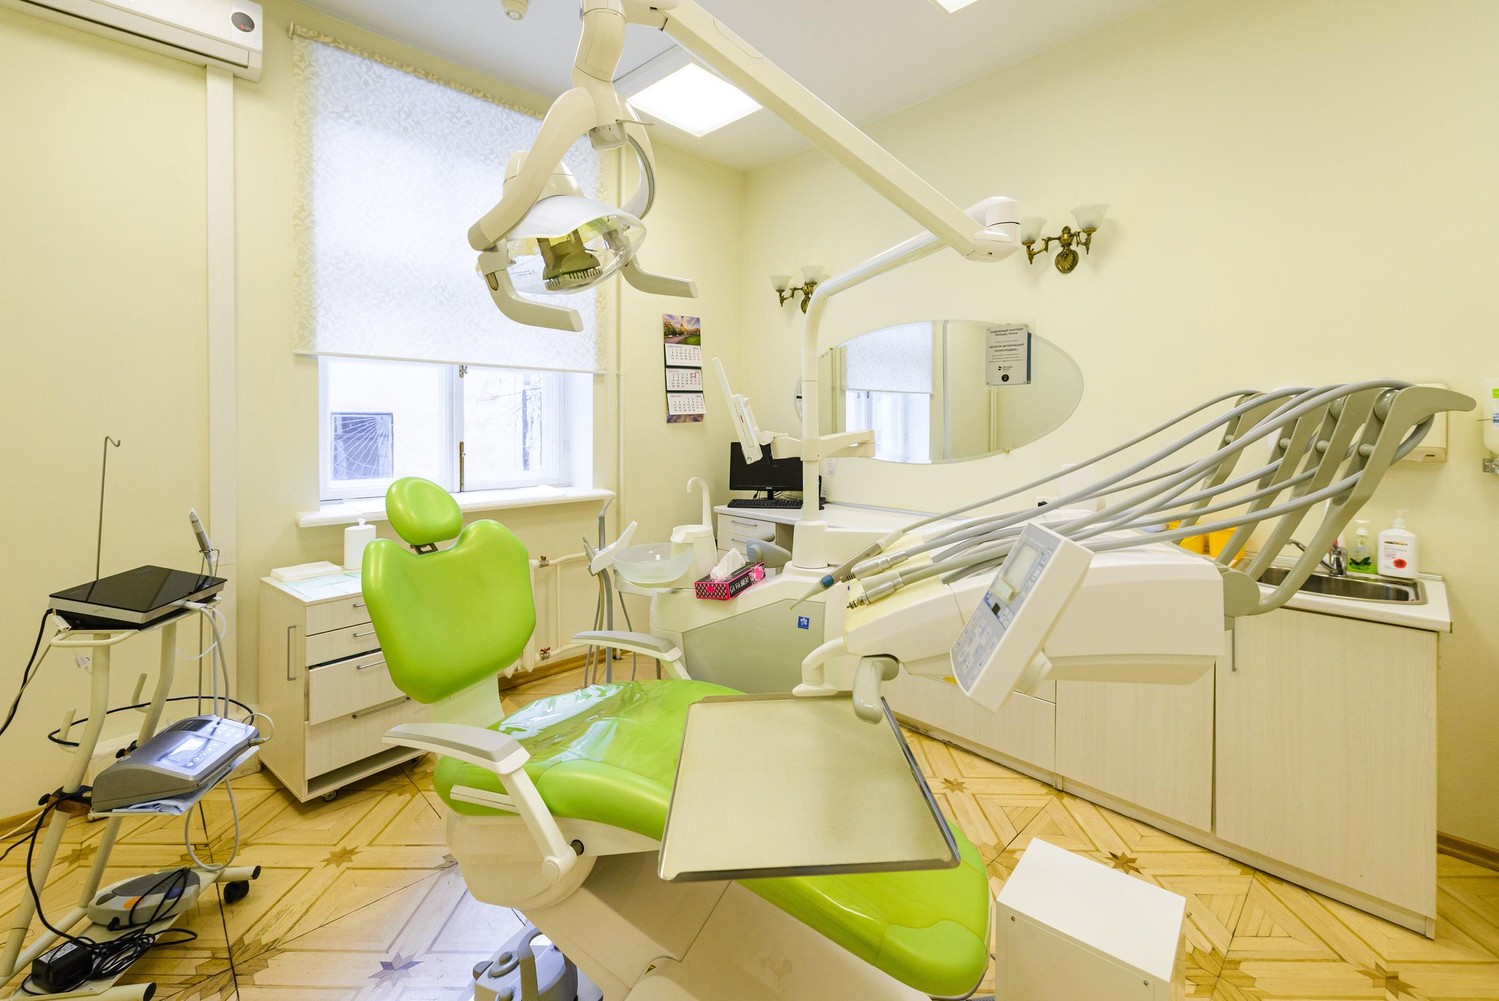 Стоматологическая поликлиника москва отзывы. Канал Грибоедова 99 стоматология. Клинья стоматологические. Стамотологическая клиника. Дизайн стоматологии.